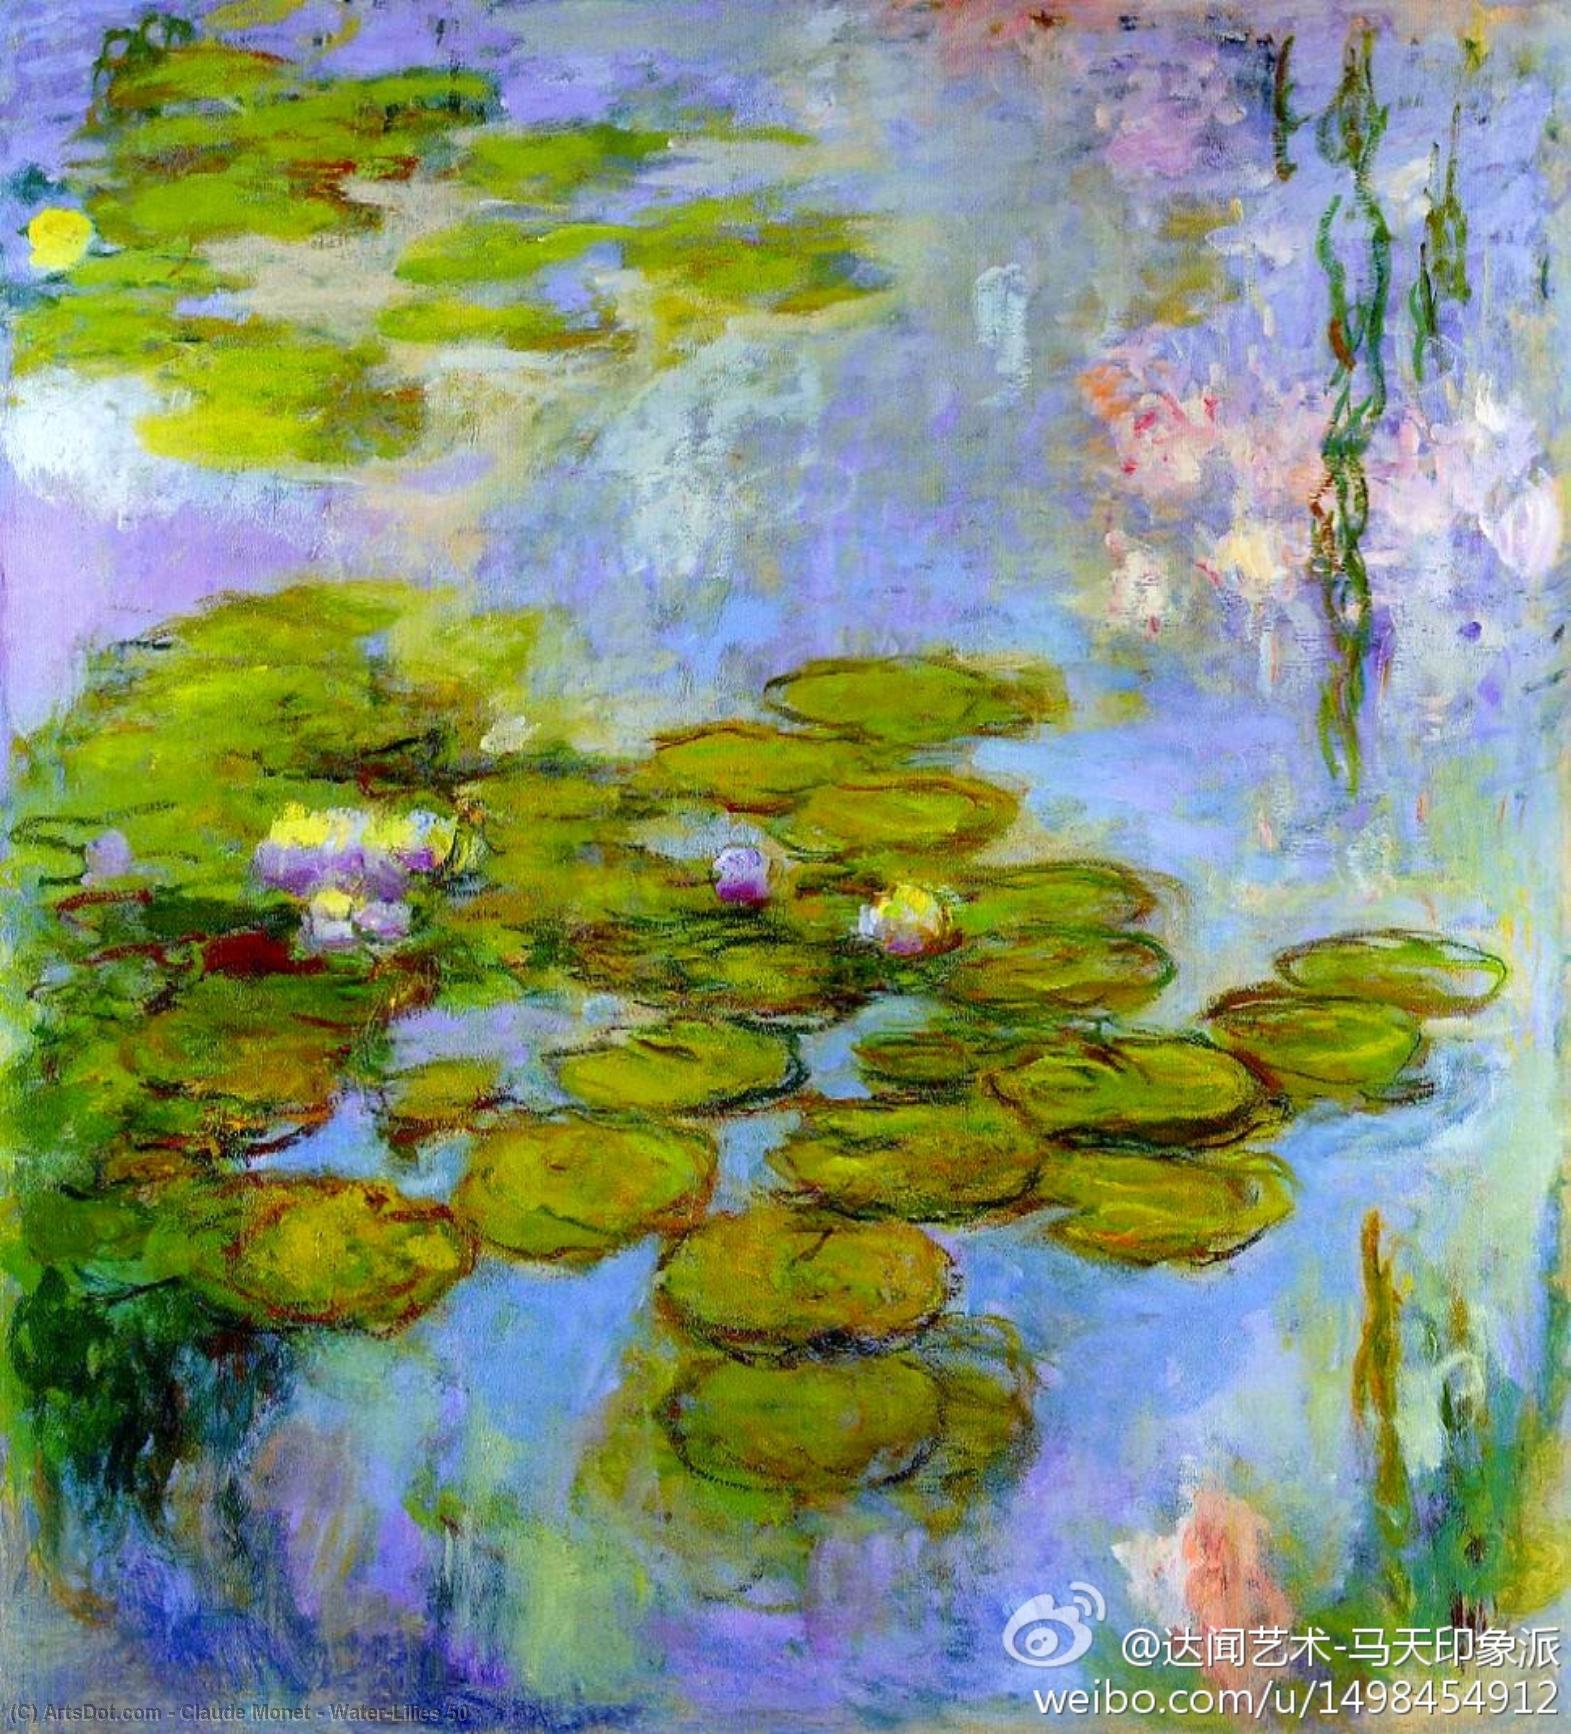 WikiOO.org - Encyclopedia of Fine Arts - Schilderen, Artwork Claude Monet - Water-Lilies 50